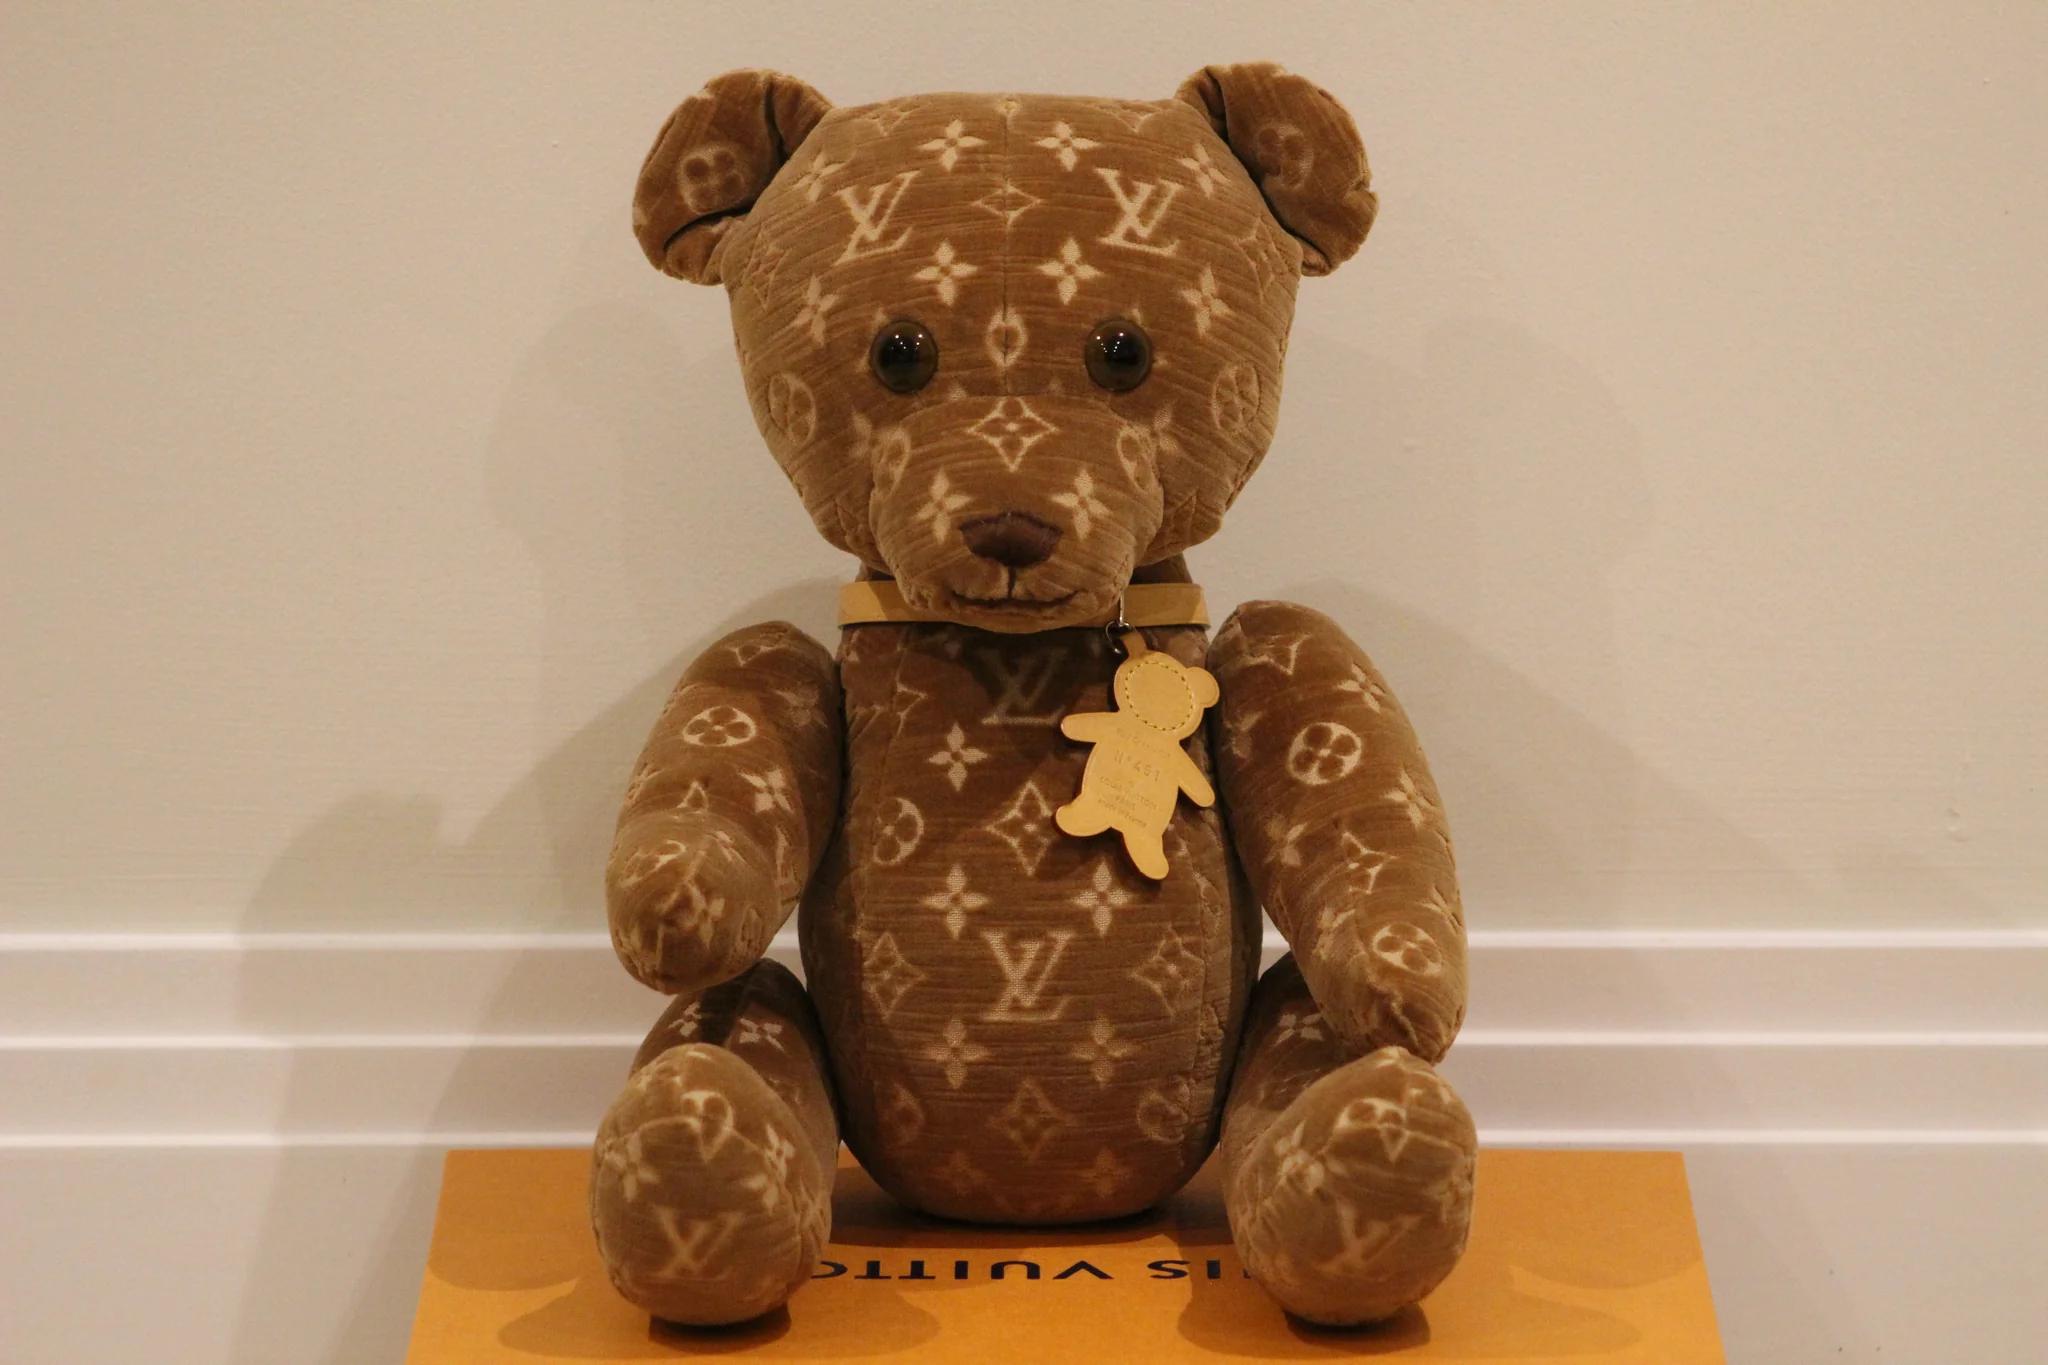 

Voici l'ours en peluche VIP Doudou 2005 Monogram Limited Edition de Louis Vuitton - une fusion harmonieuse de luxe, d'exclusivité et de charme intemporel. Cette création particulière provient de la très estimée Collection Runway pour hommes